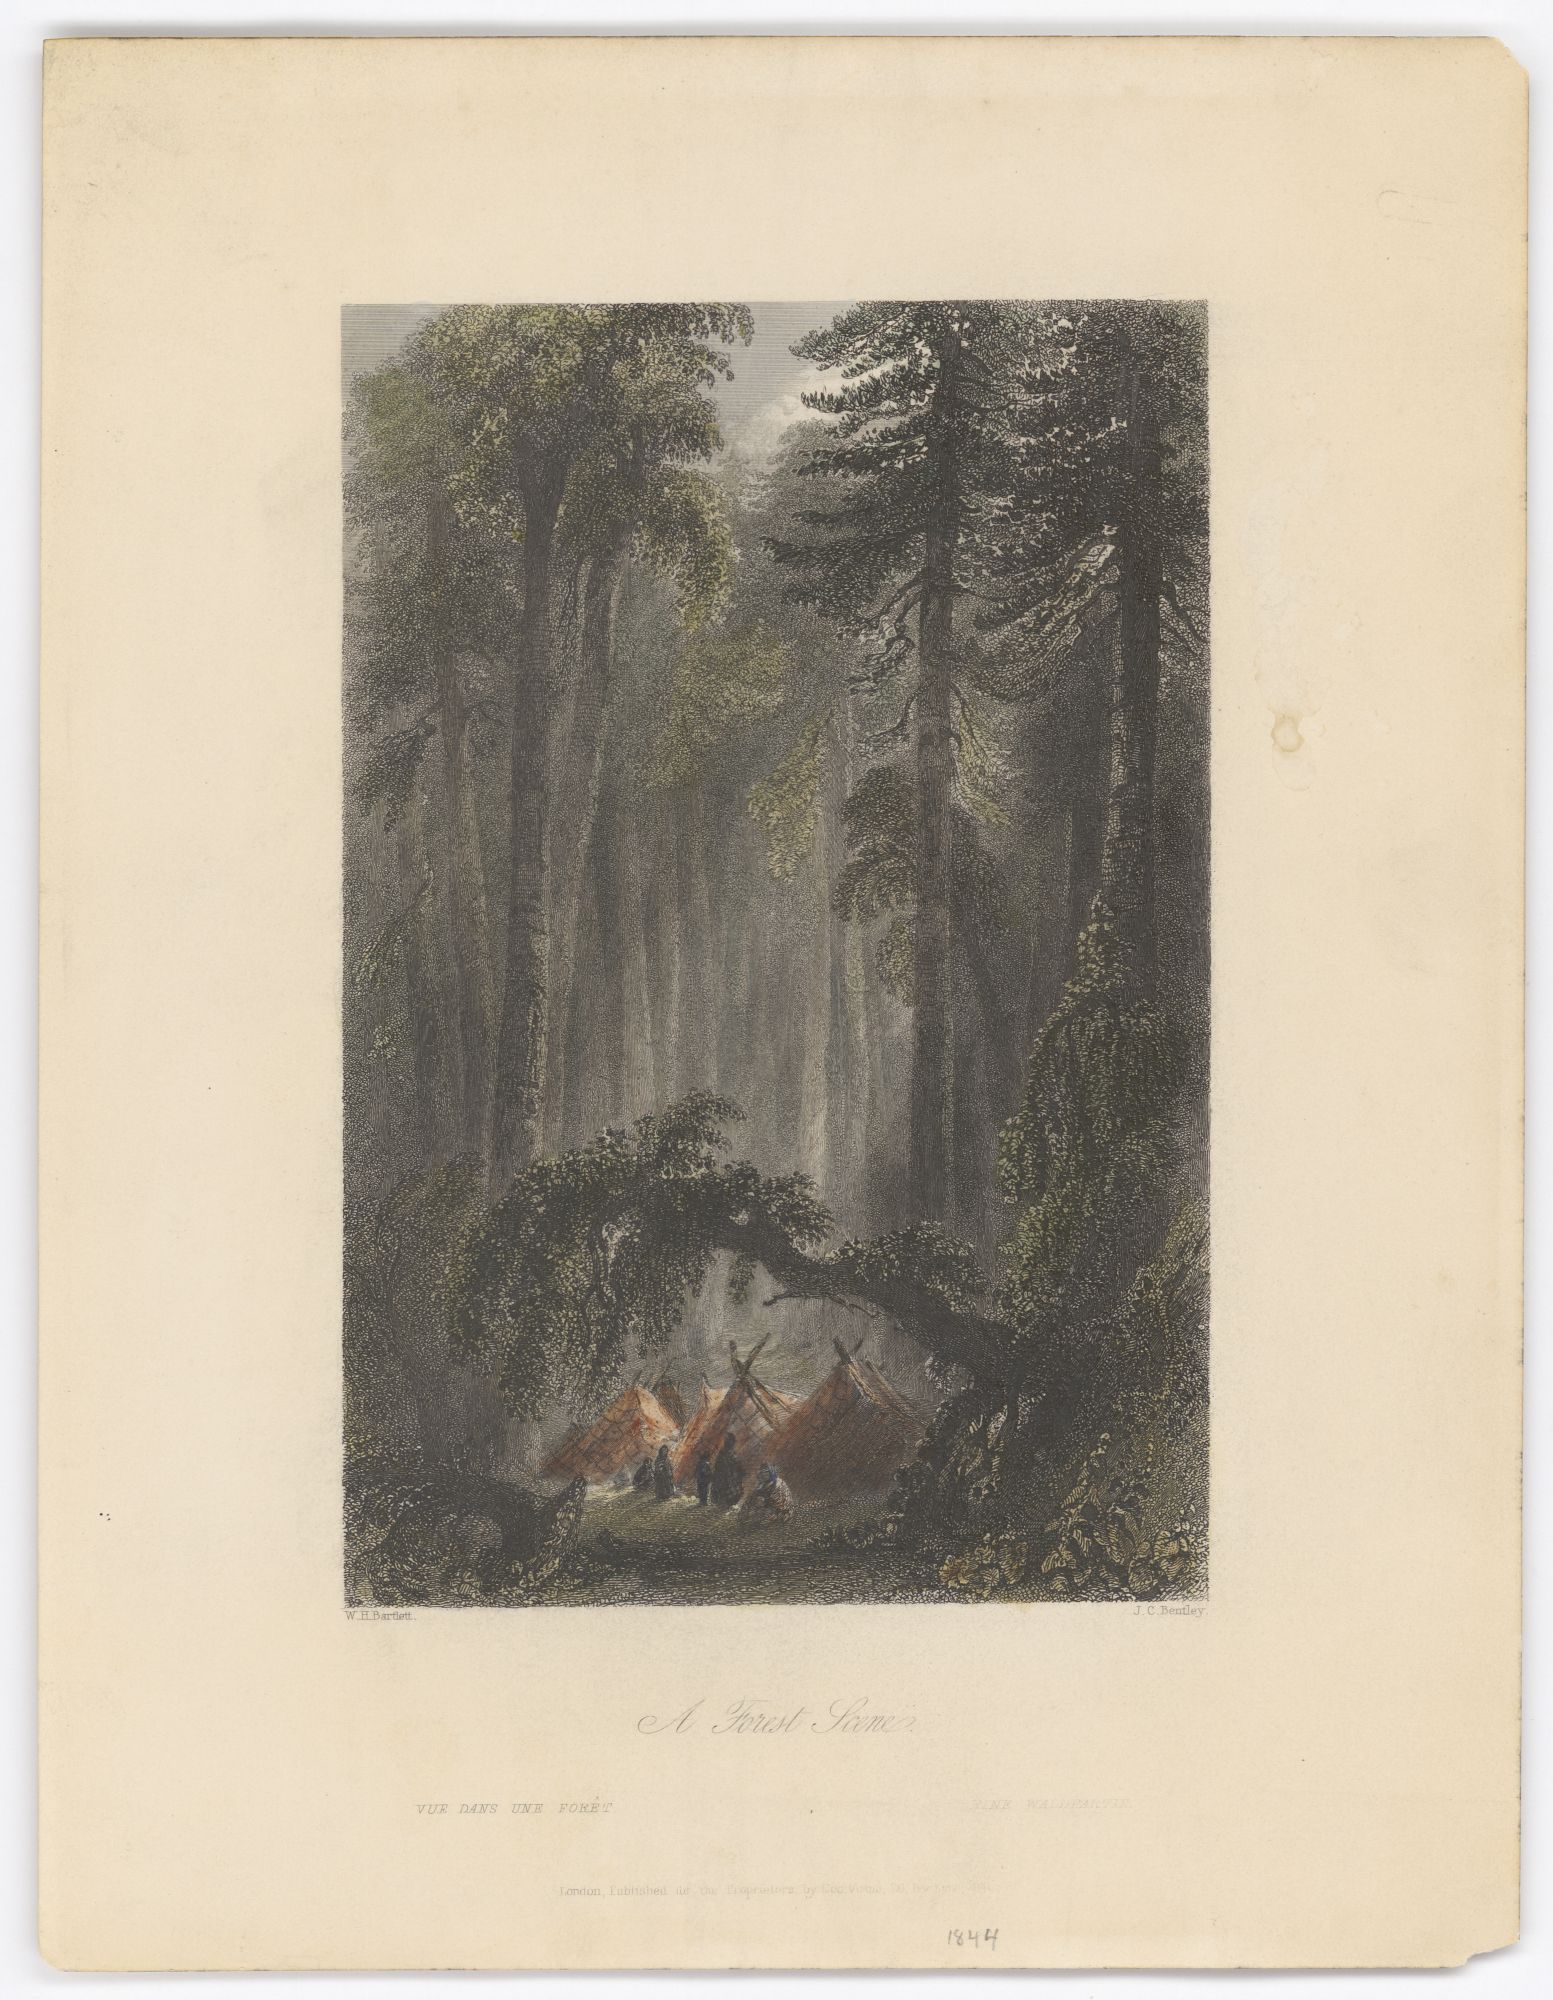 Estampe montrant un campement dans une forêt, la nuit.